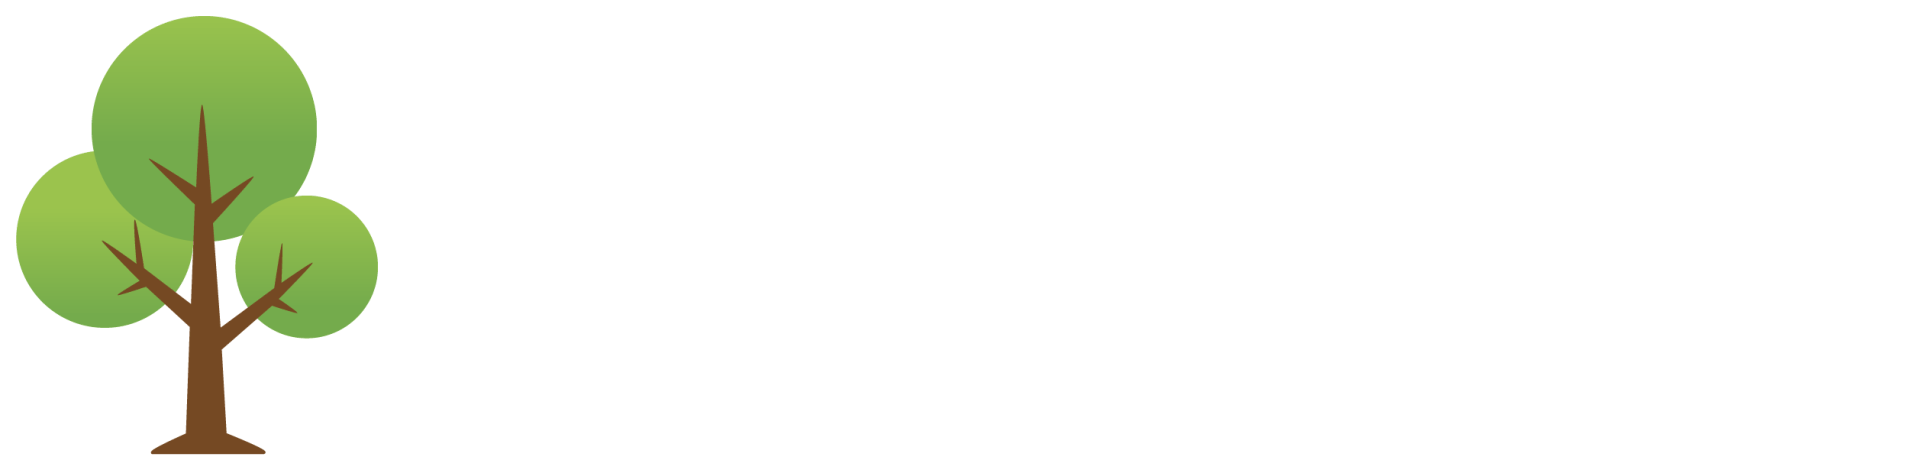 North Shore Montessori School